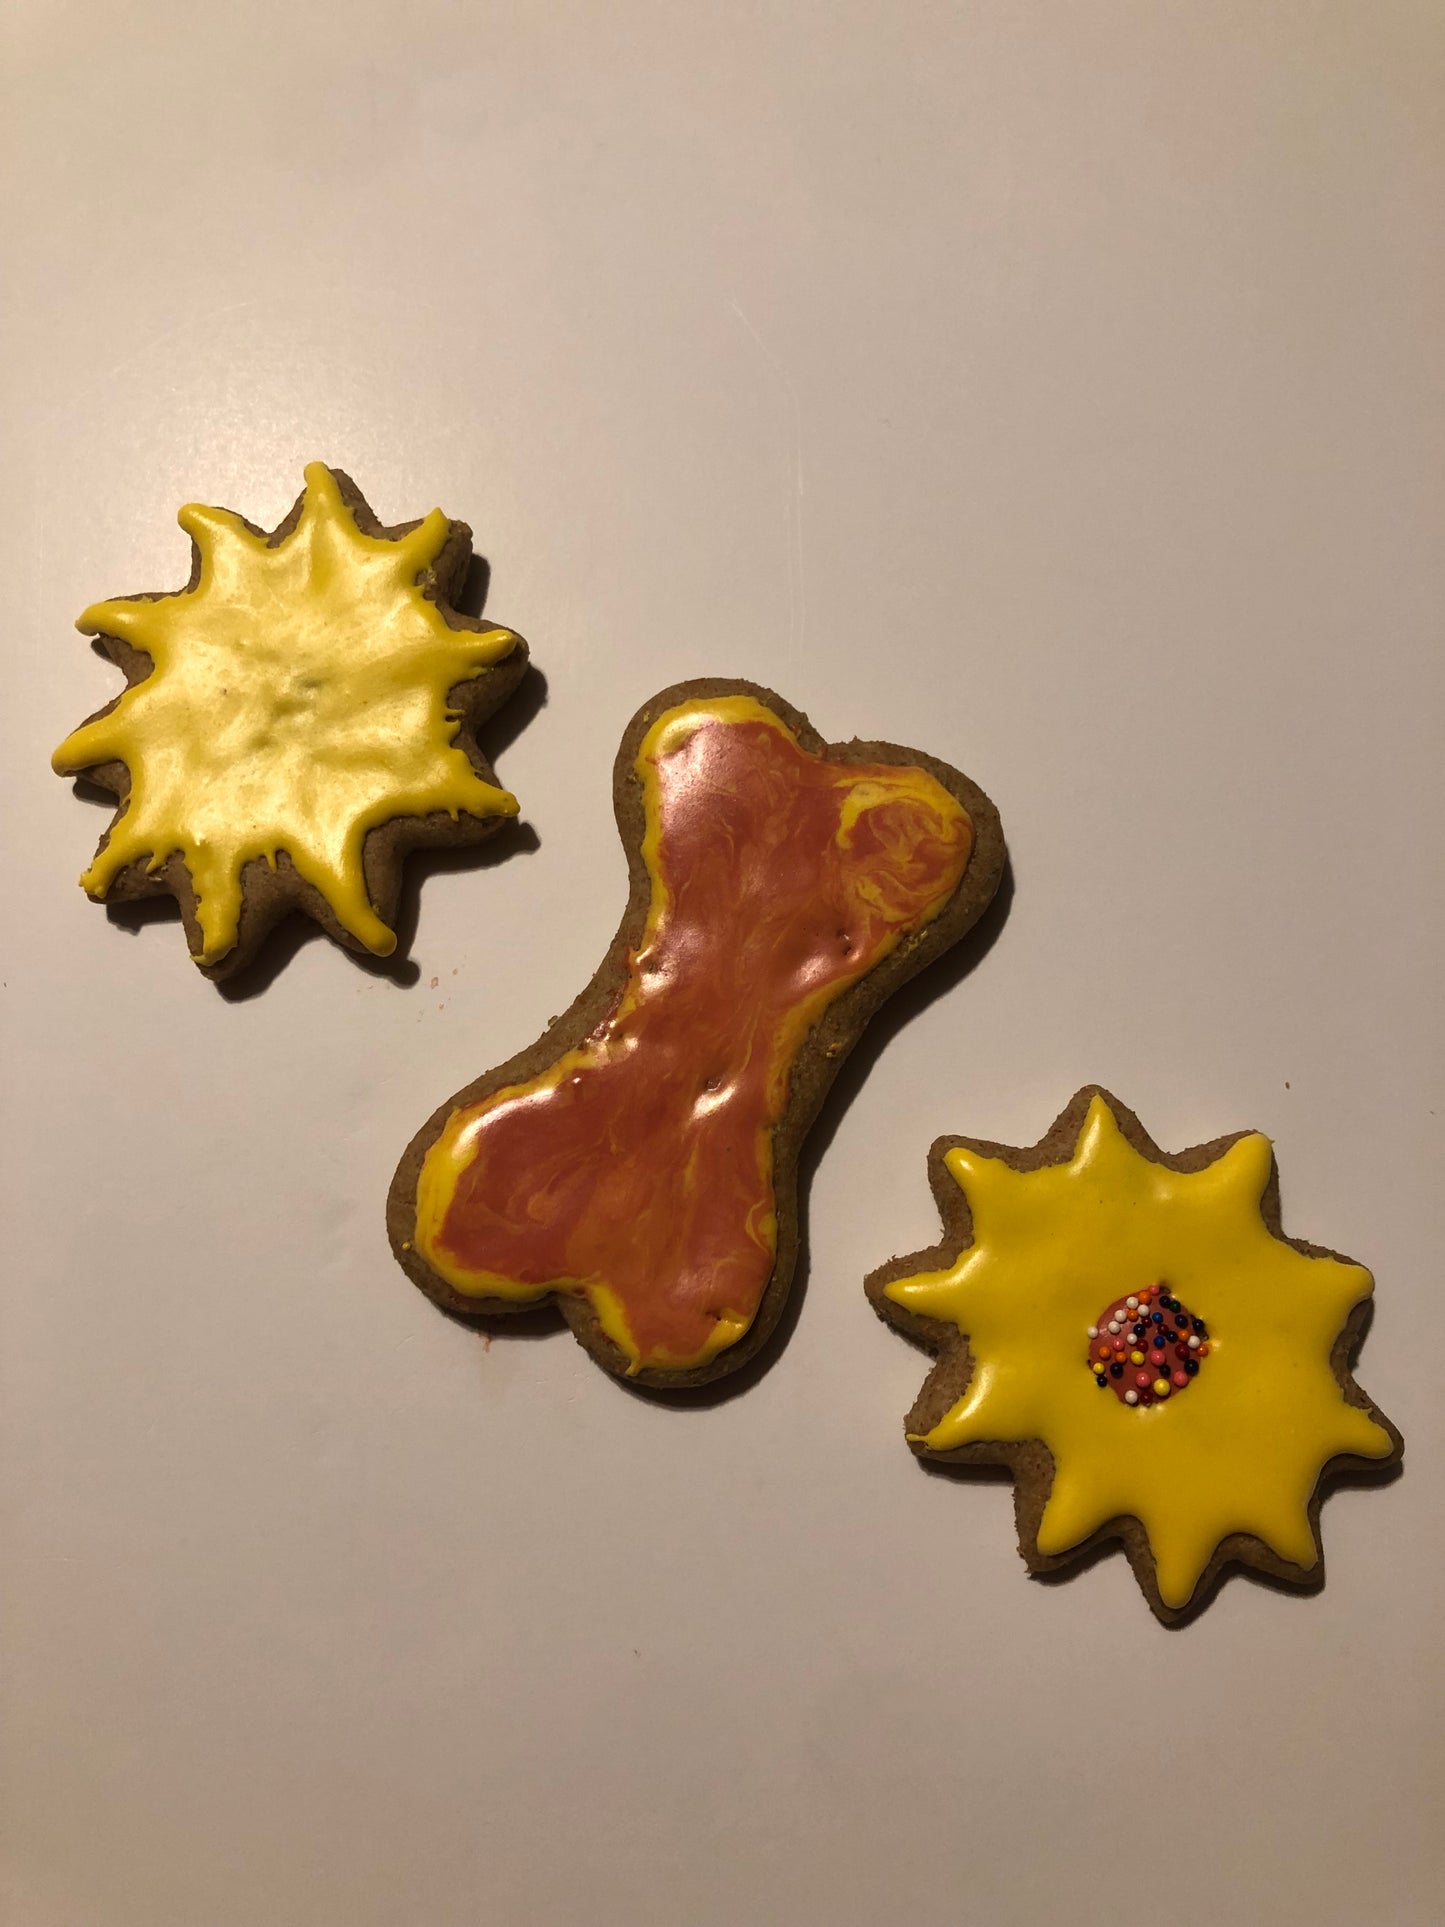 Fun Cookies